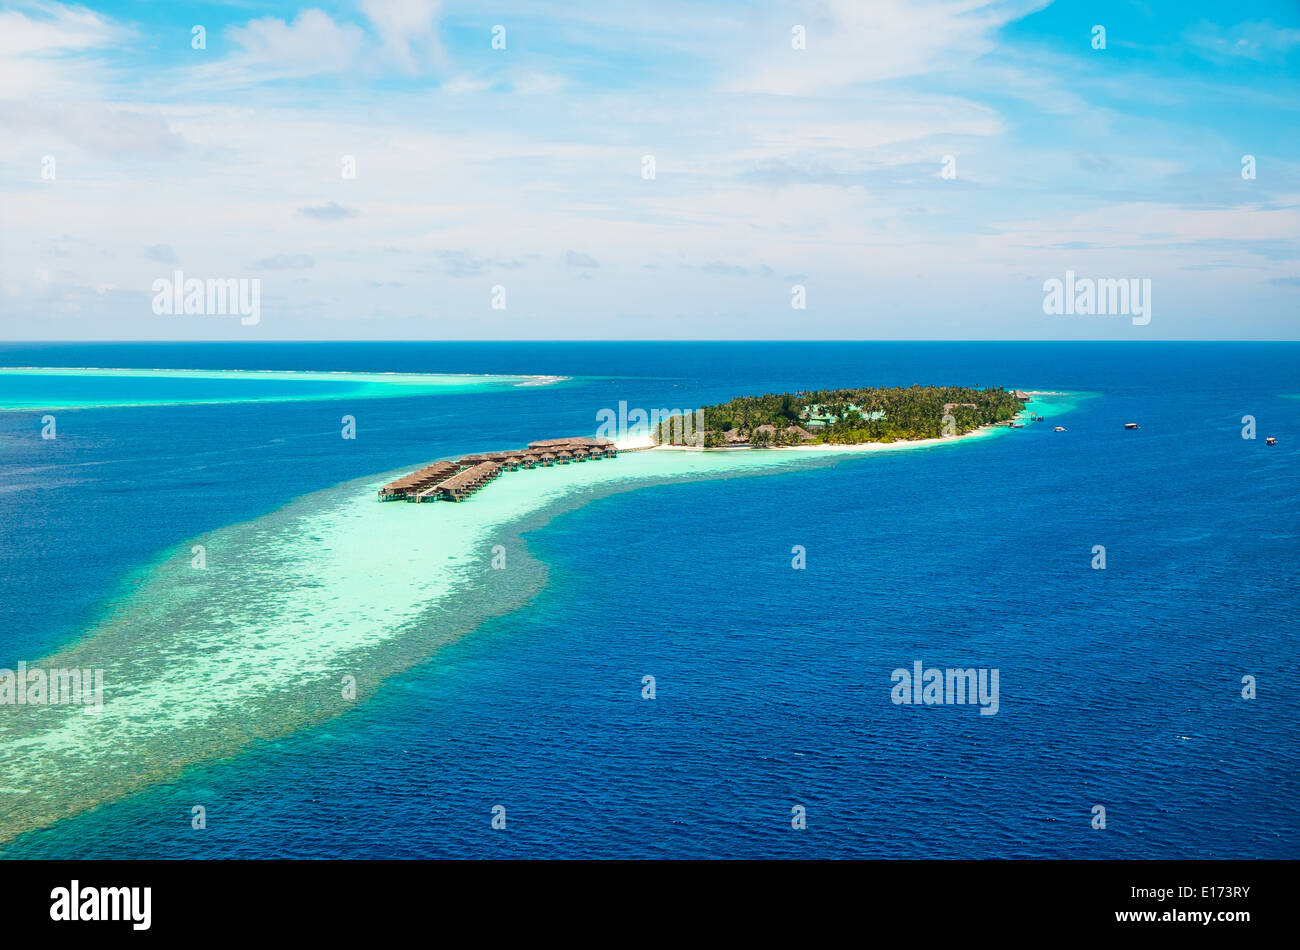 Hotel sull'isola vista dall'alto. Maldive Oceano Indiano Foto Stock